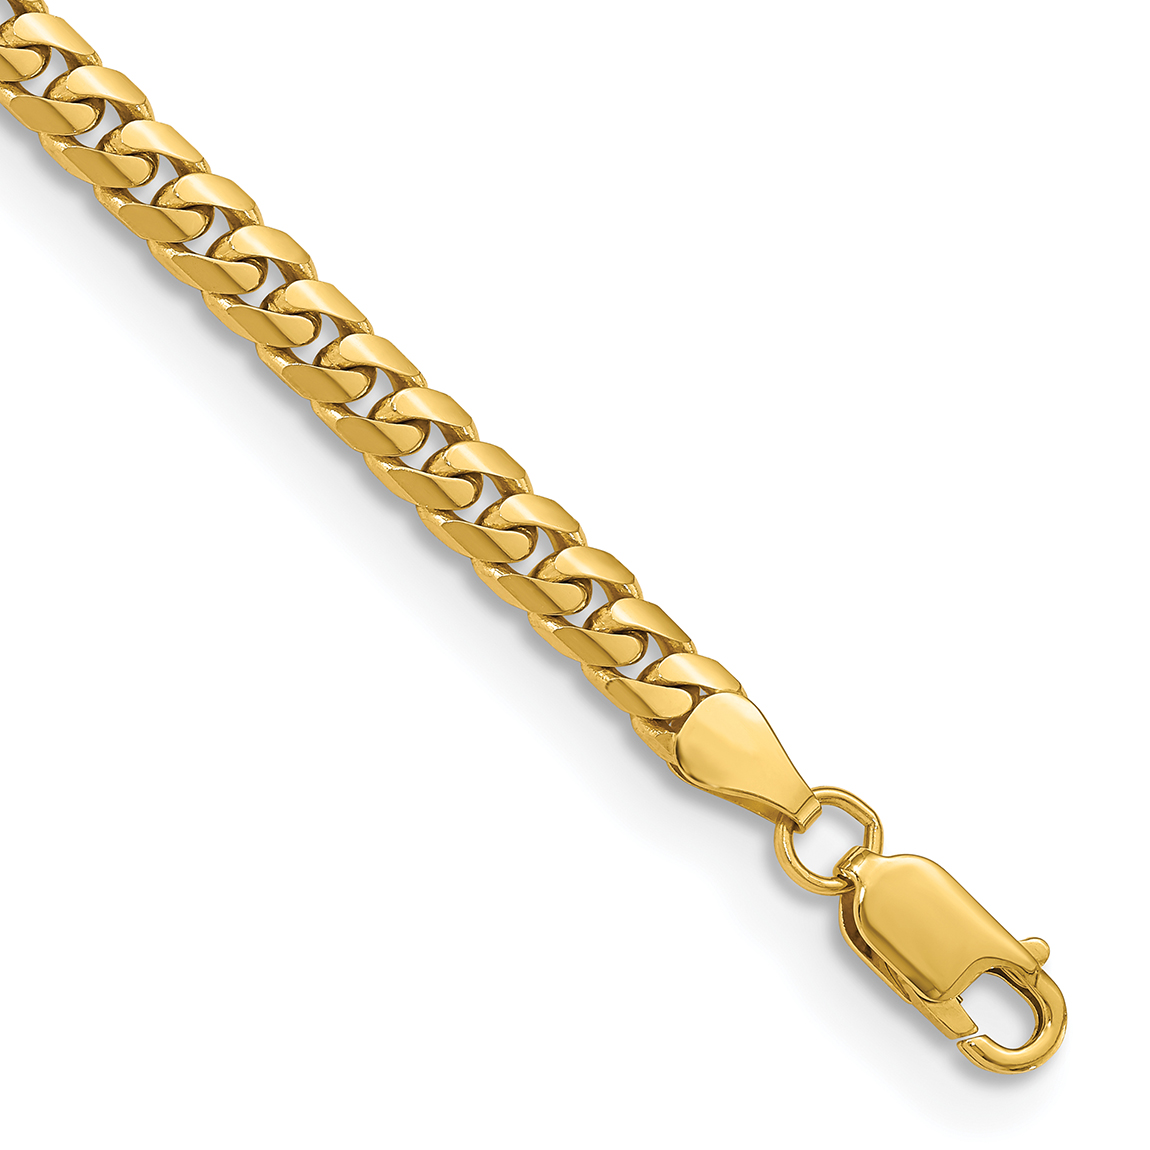 Fancy Cuban Men's Bracelet Solid gold with diamond lock.